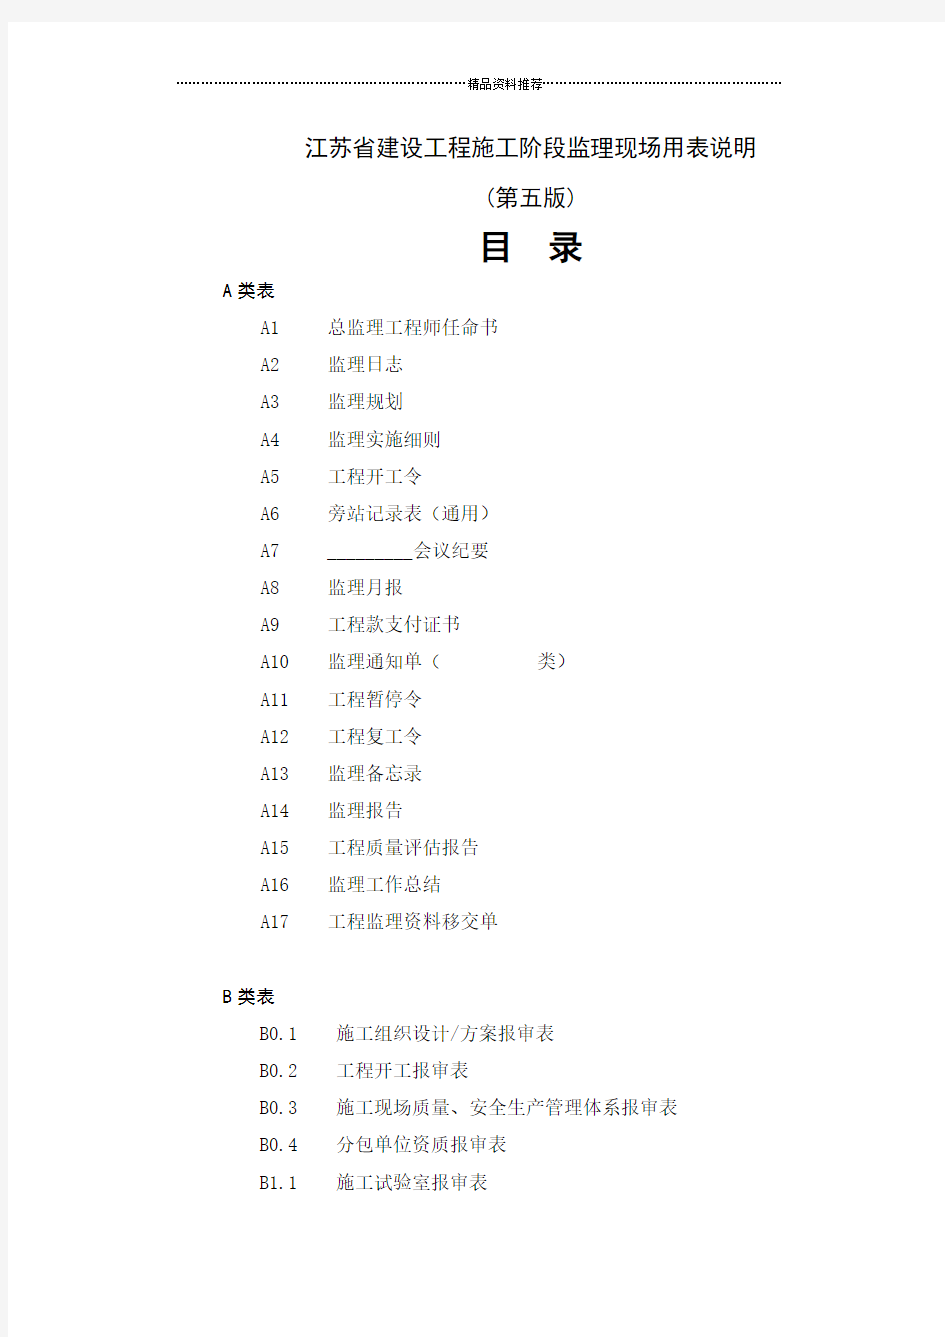 江苏省建设工程施工阶段监理现场用表(第五版)